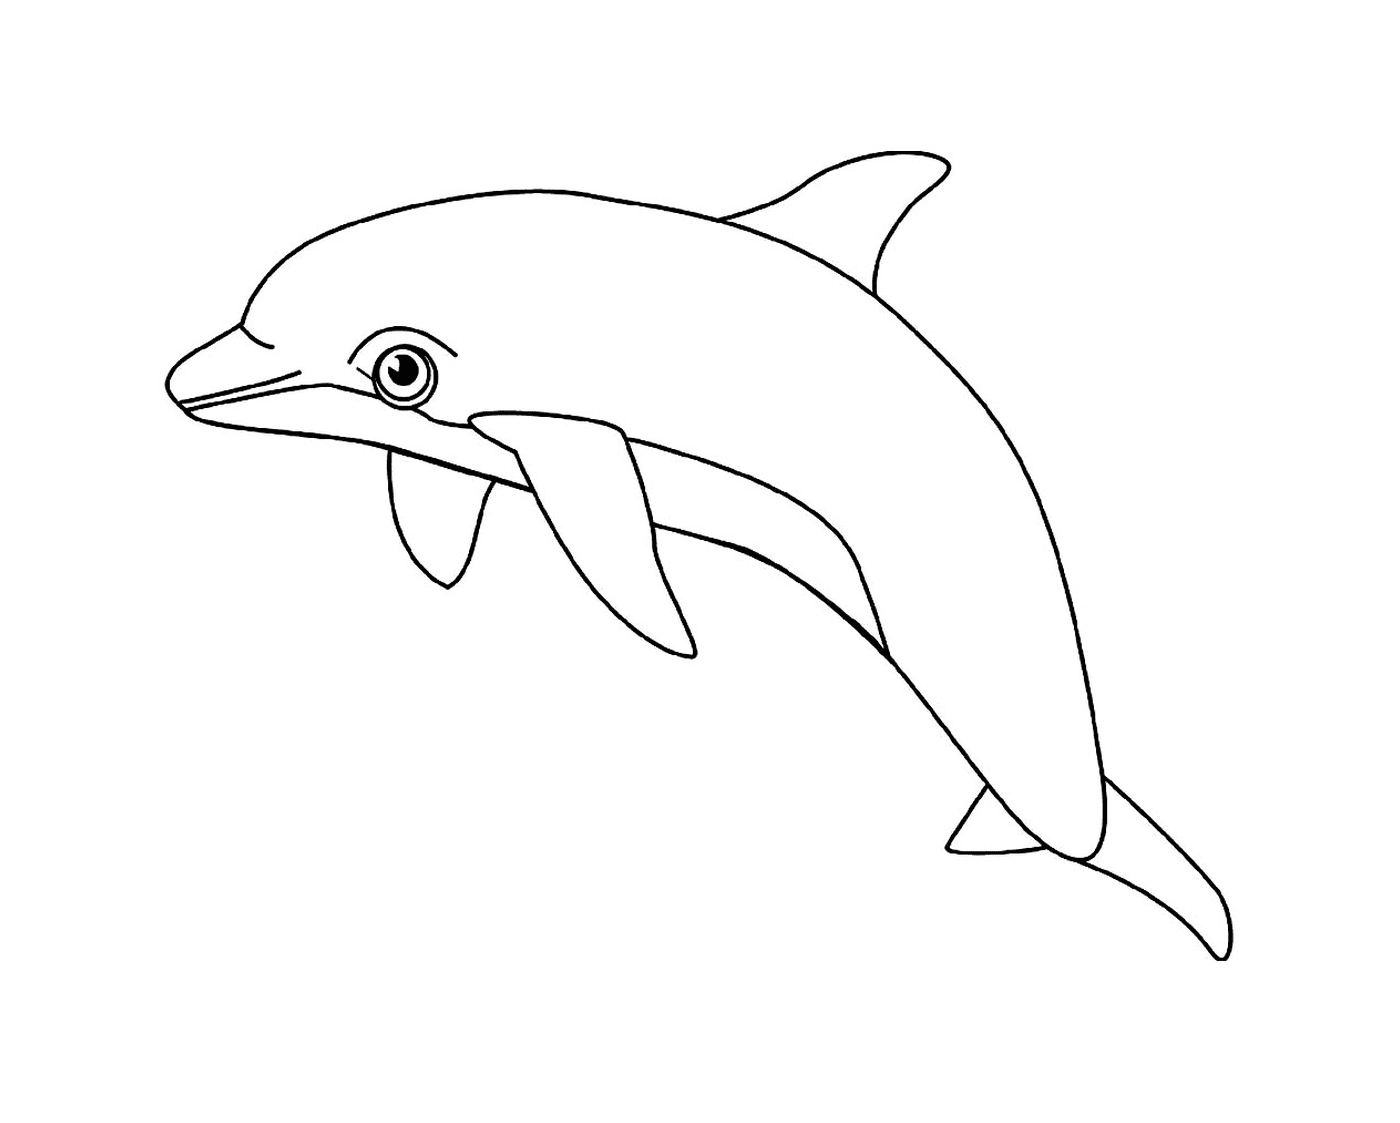  Un animal acuático: el delfín 